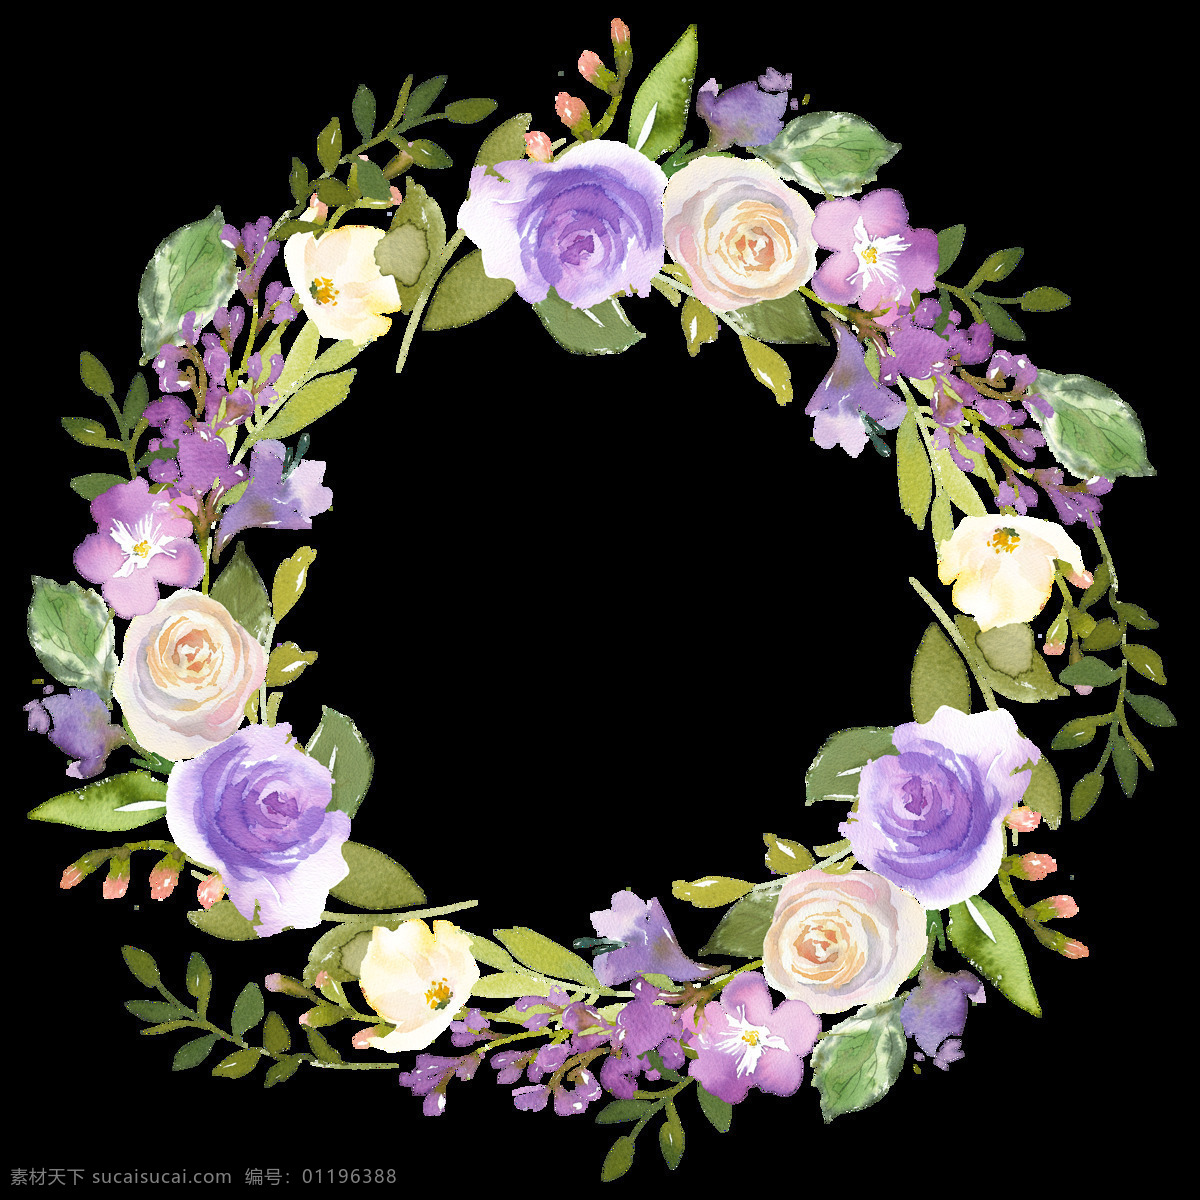 水彩 白 紫 花环 透明 底纹 婚礼 卡片 浪漫 免扣素材 透明素材 唯美 装饰图案